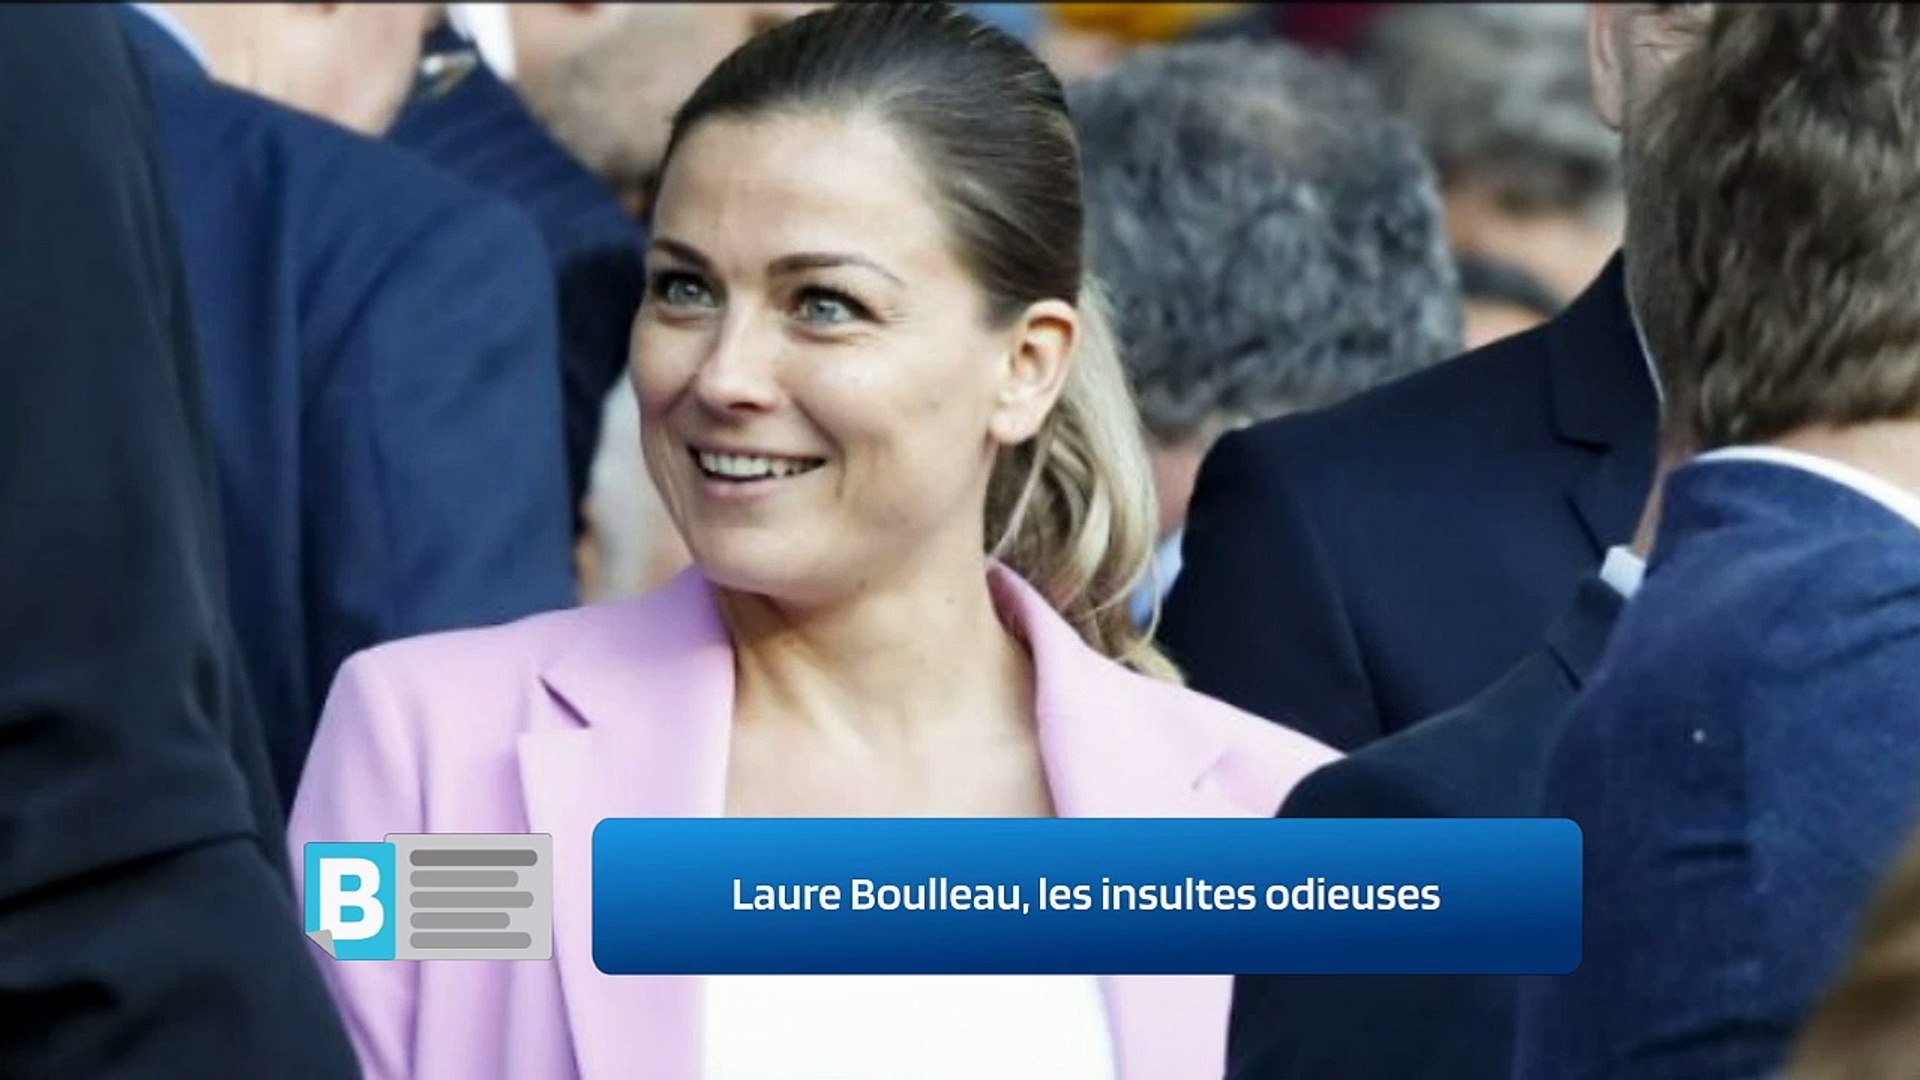 Laure Boulleau, les insultes odieuses - Vidéo Dailymotion